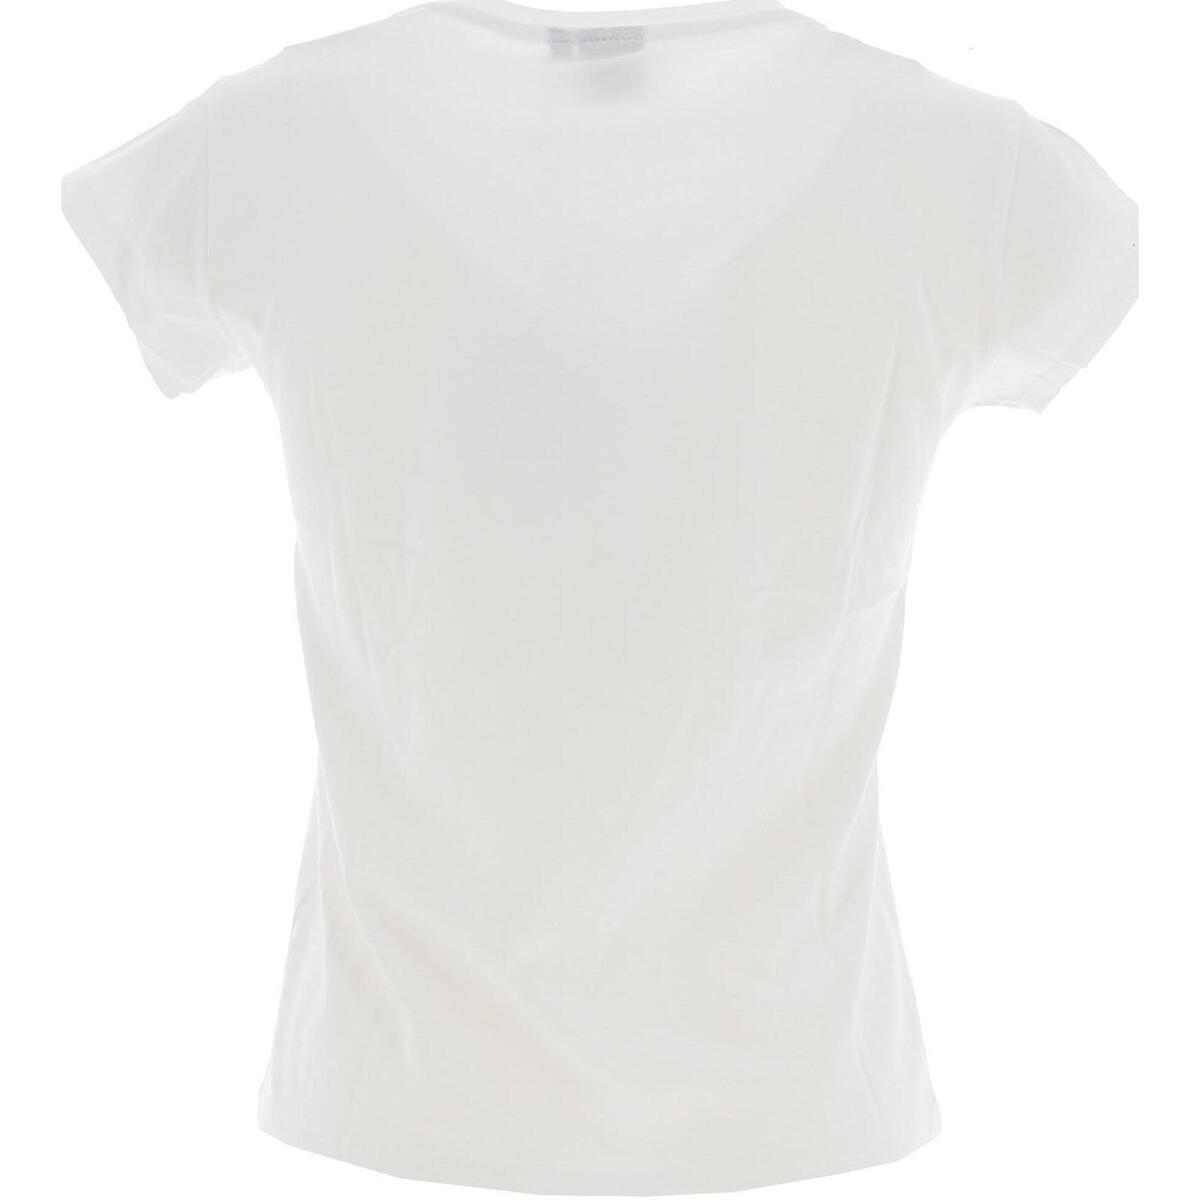 Kaporal Blanc Tee shirt manches courtes A0vjaLCc